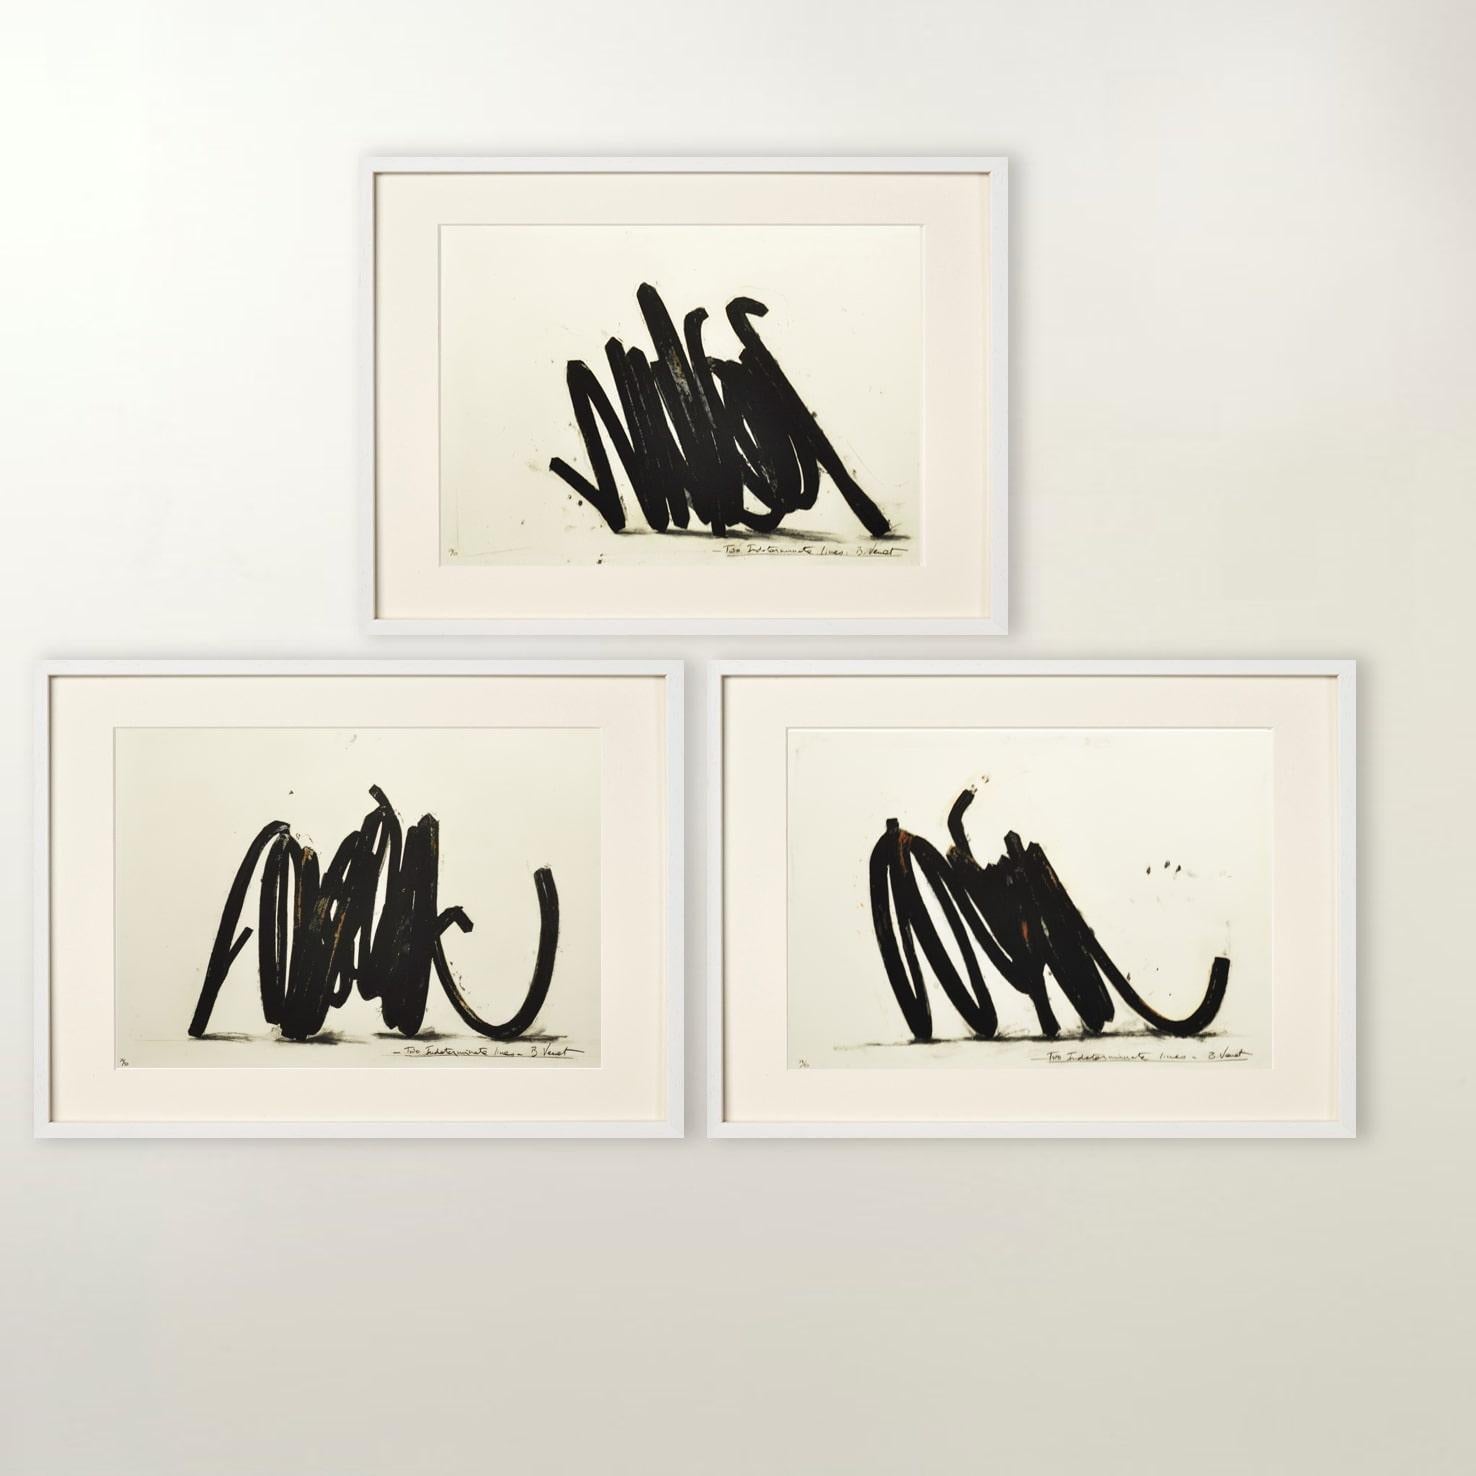 Figurative Print Bernar Venet - Deux lignes indéterminées - Contemporain, 21e siècle, gravure, noir, édition